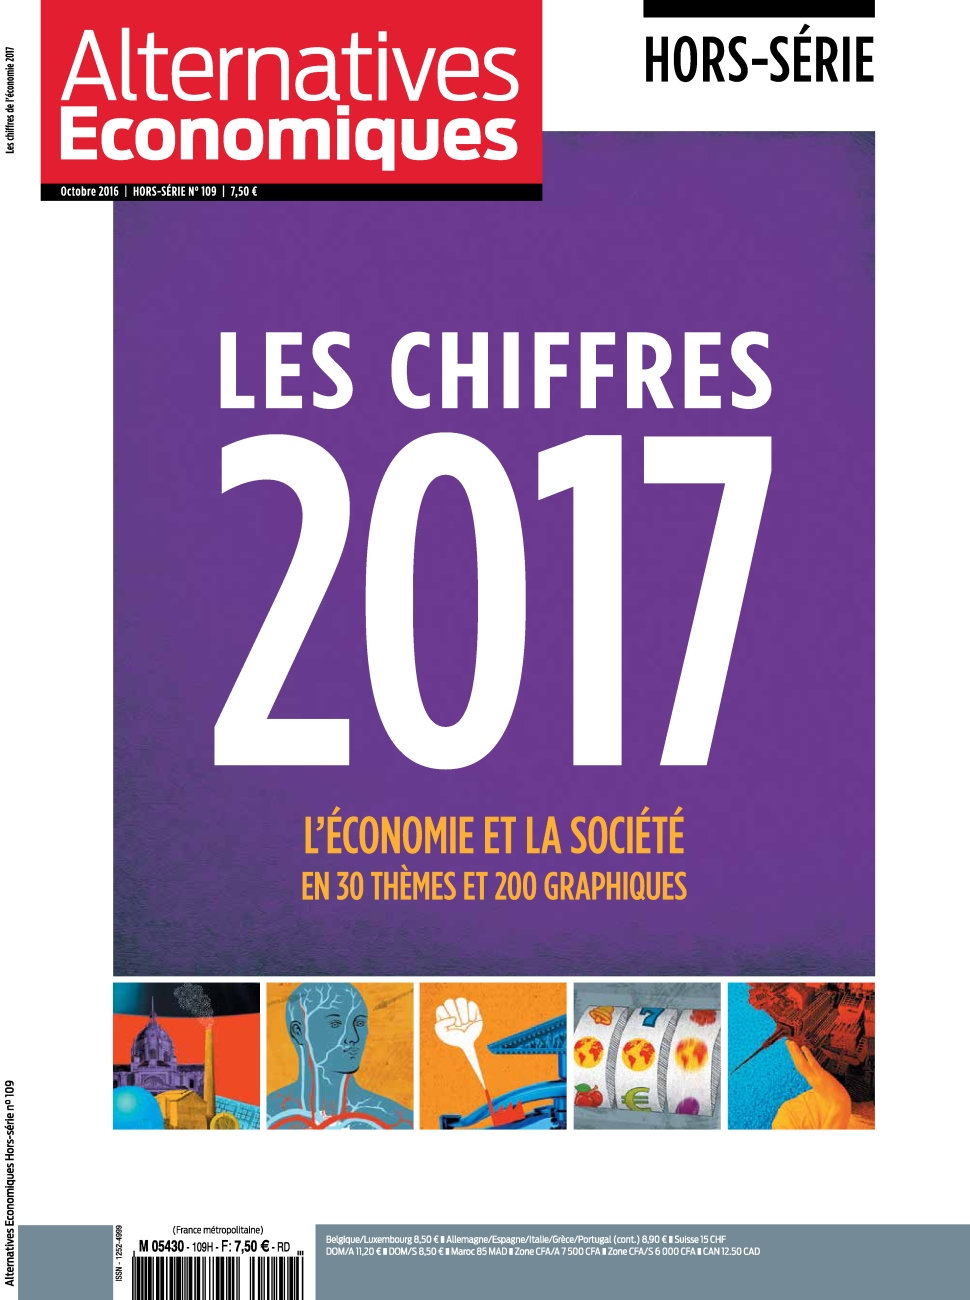 Alternatives Économiques Hors-Série N°109 - Octobre 2016